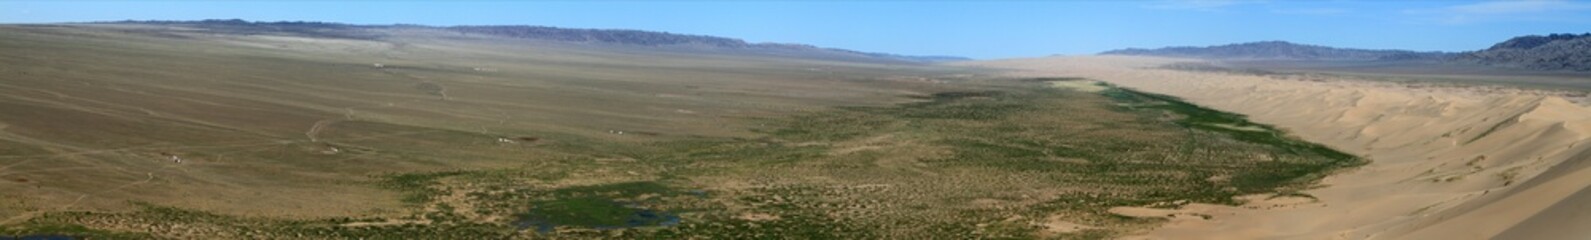 Landschaften der Wüste Gobi Mongolei